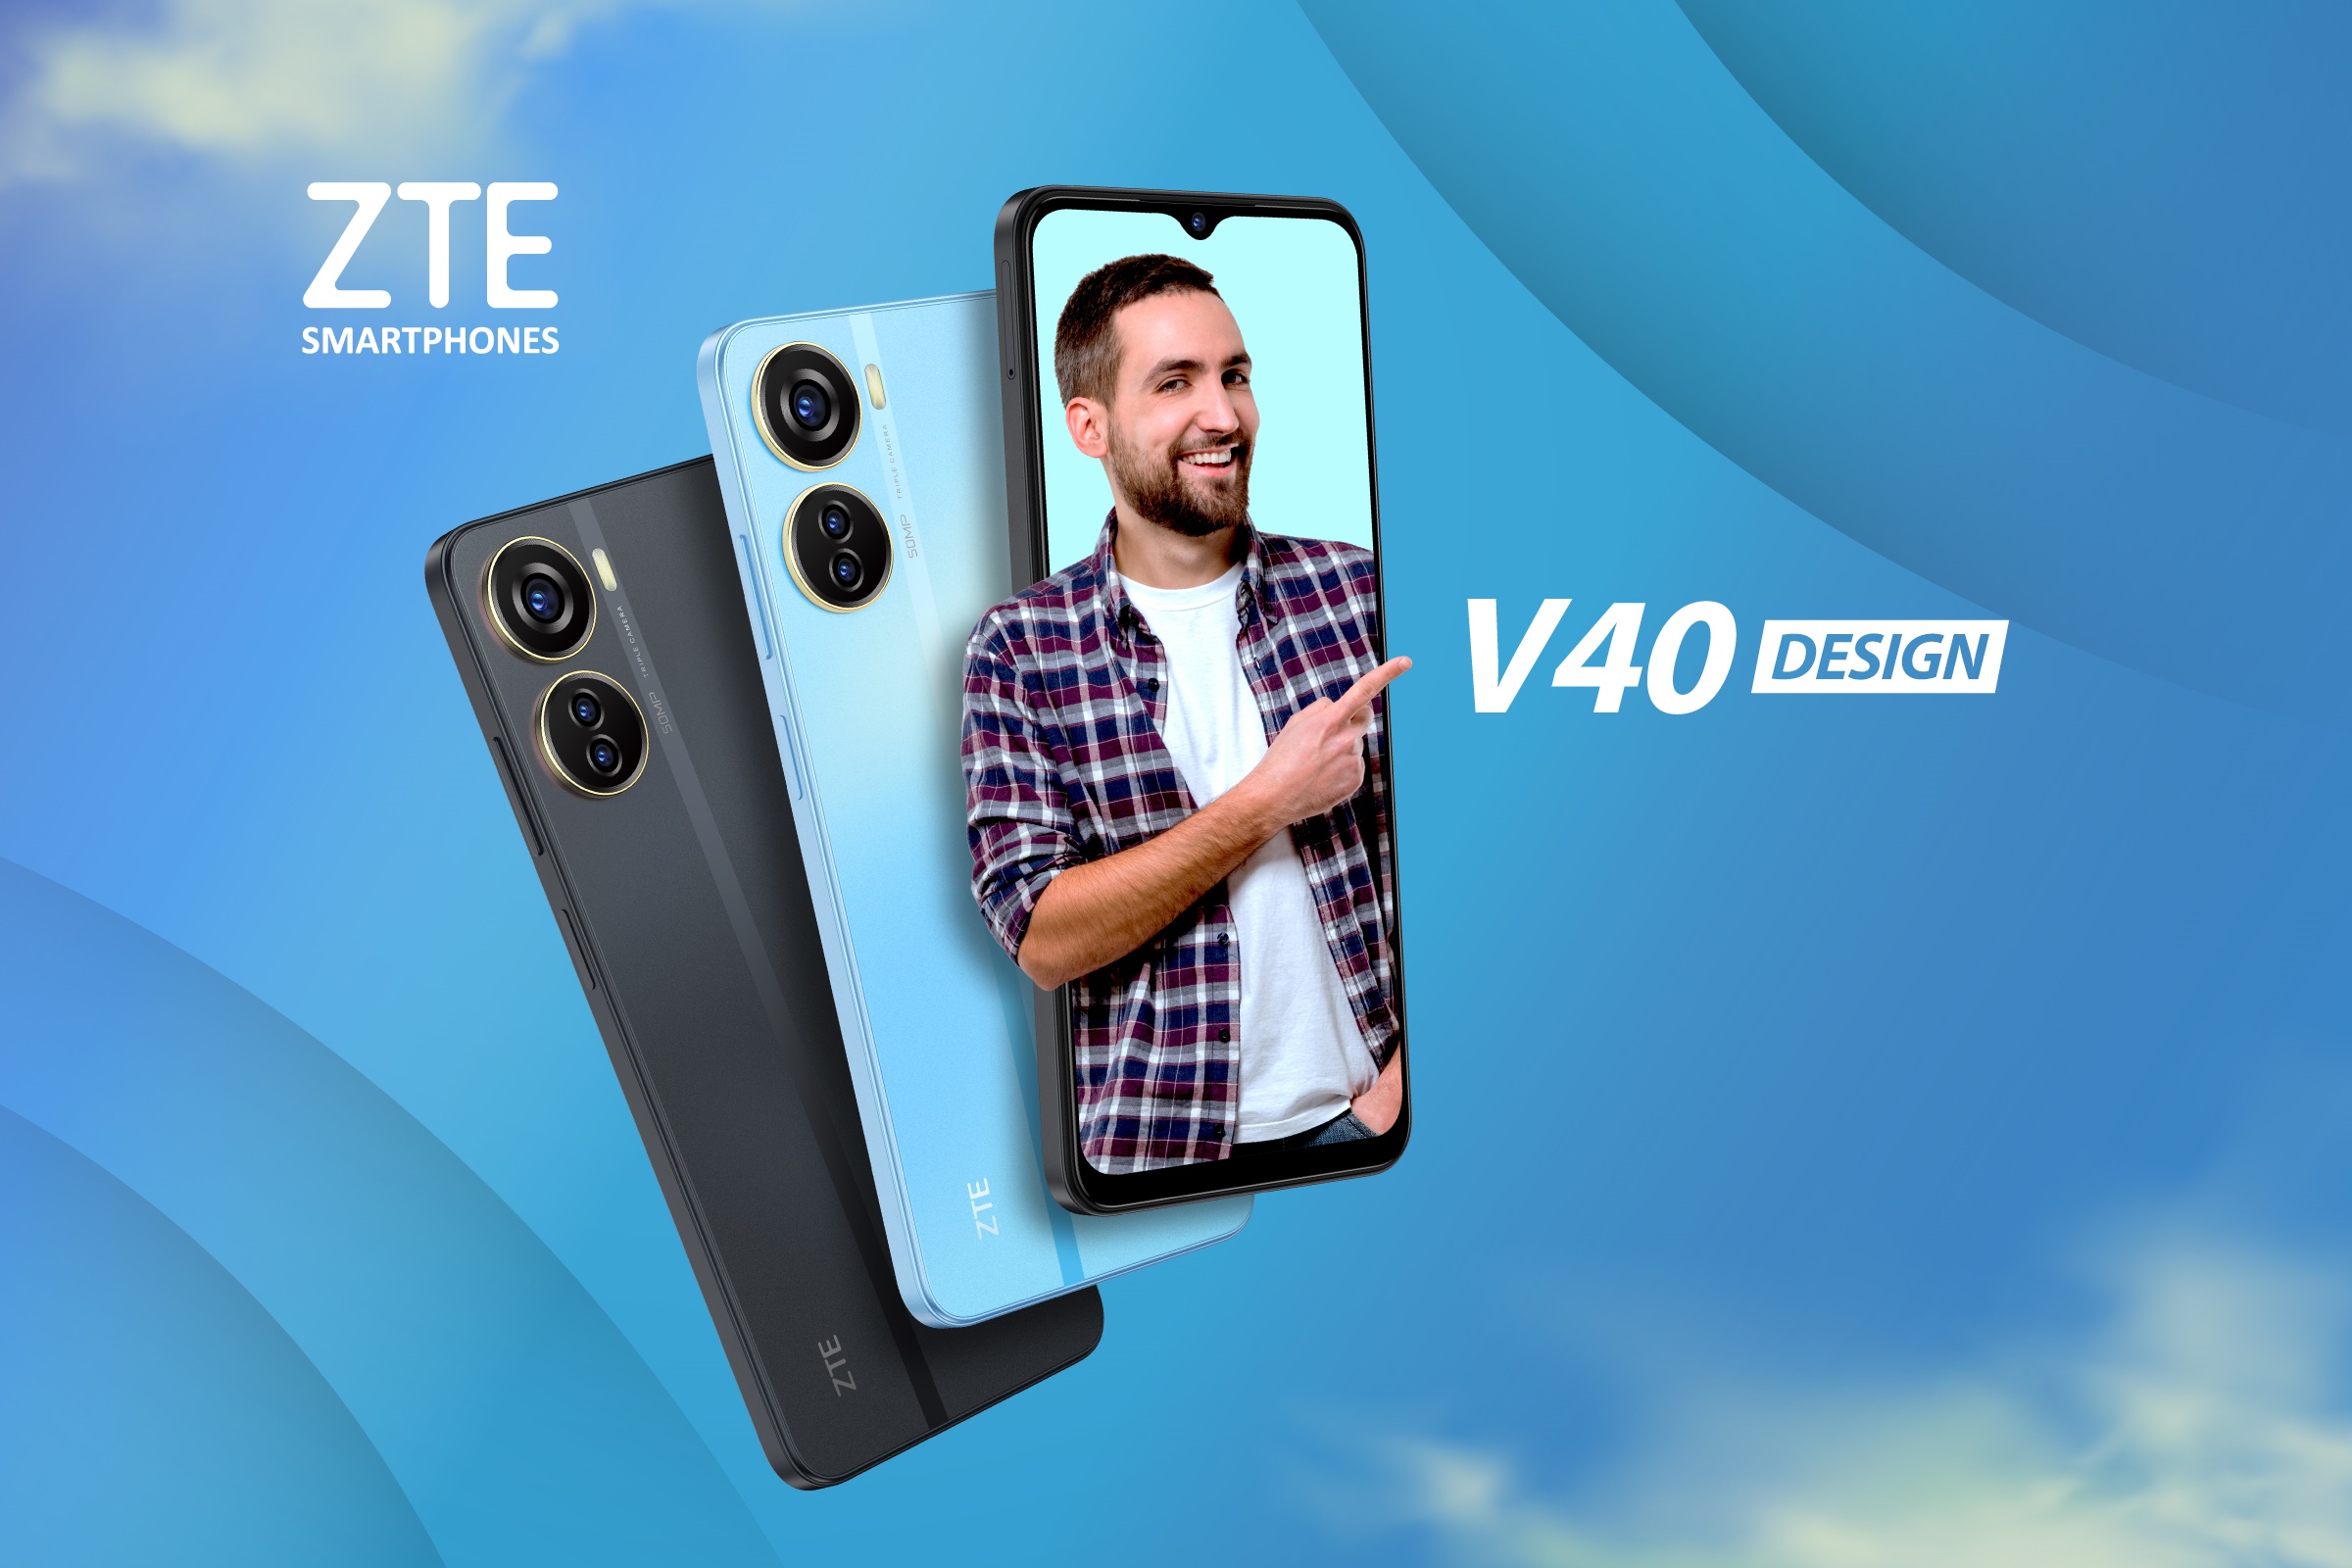 Foto de El nuevo ZTE V40 Design ya está disponible en Perú para sorprender con su gran pantalla y diseño innovador